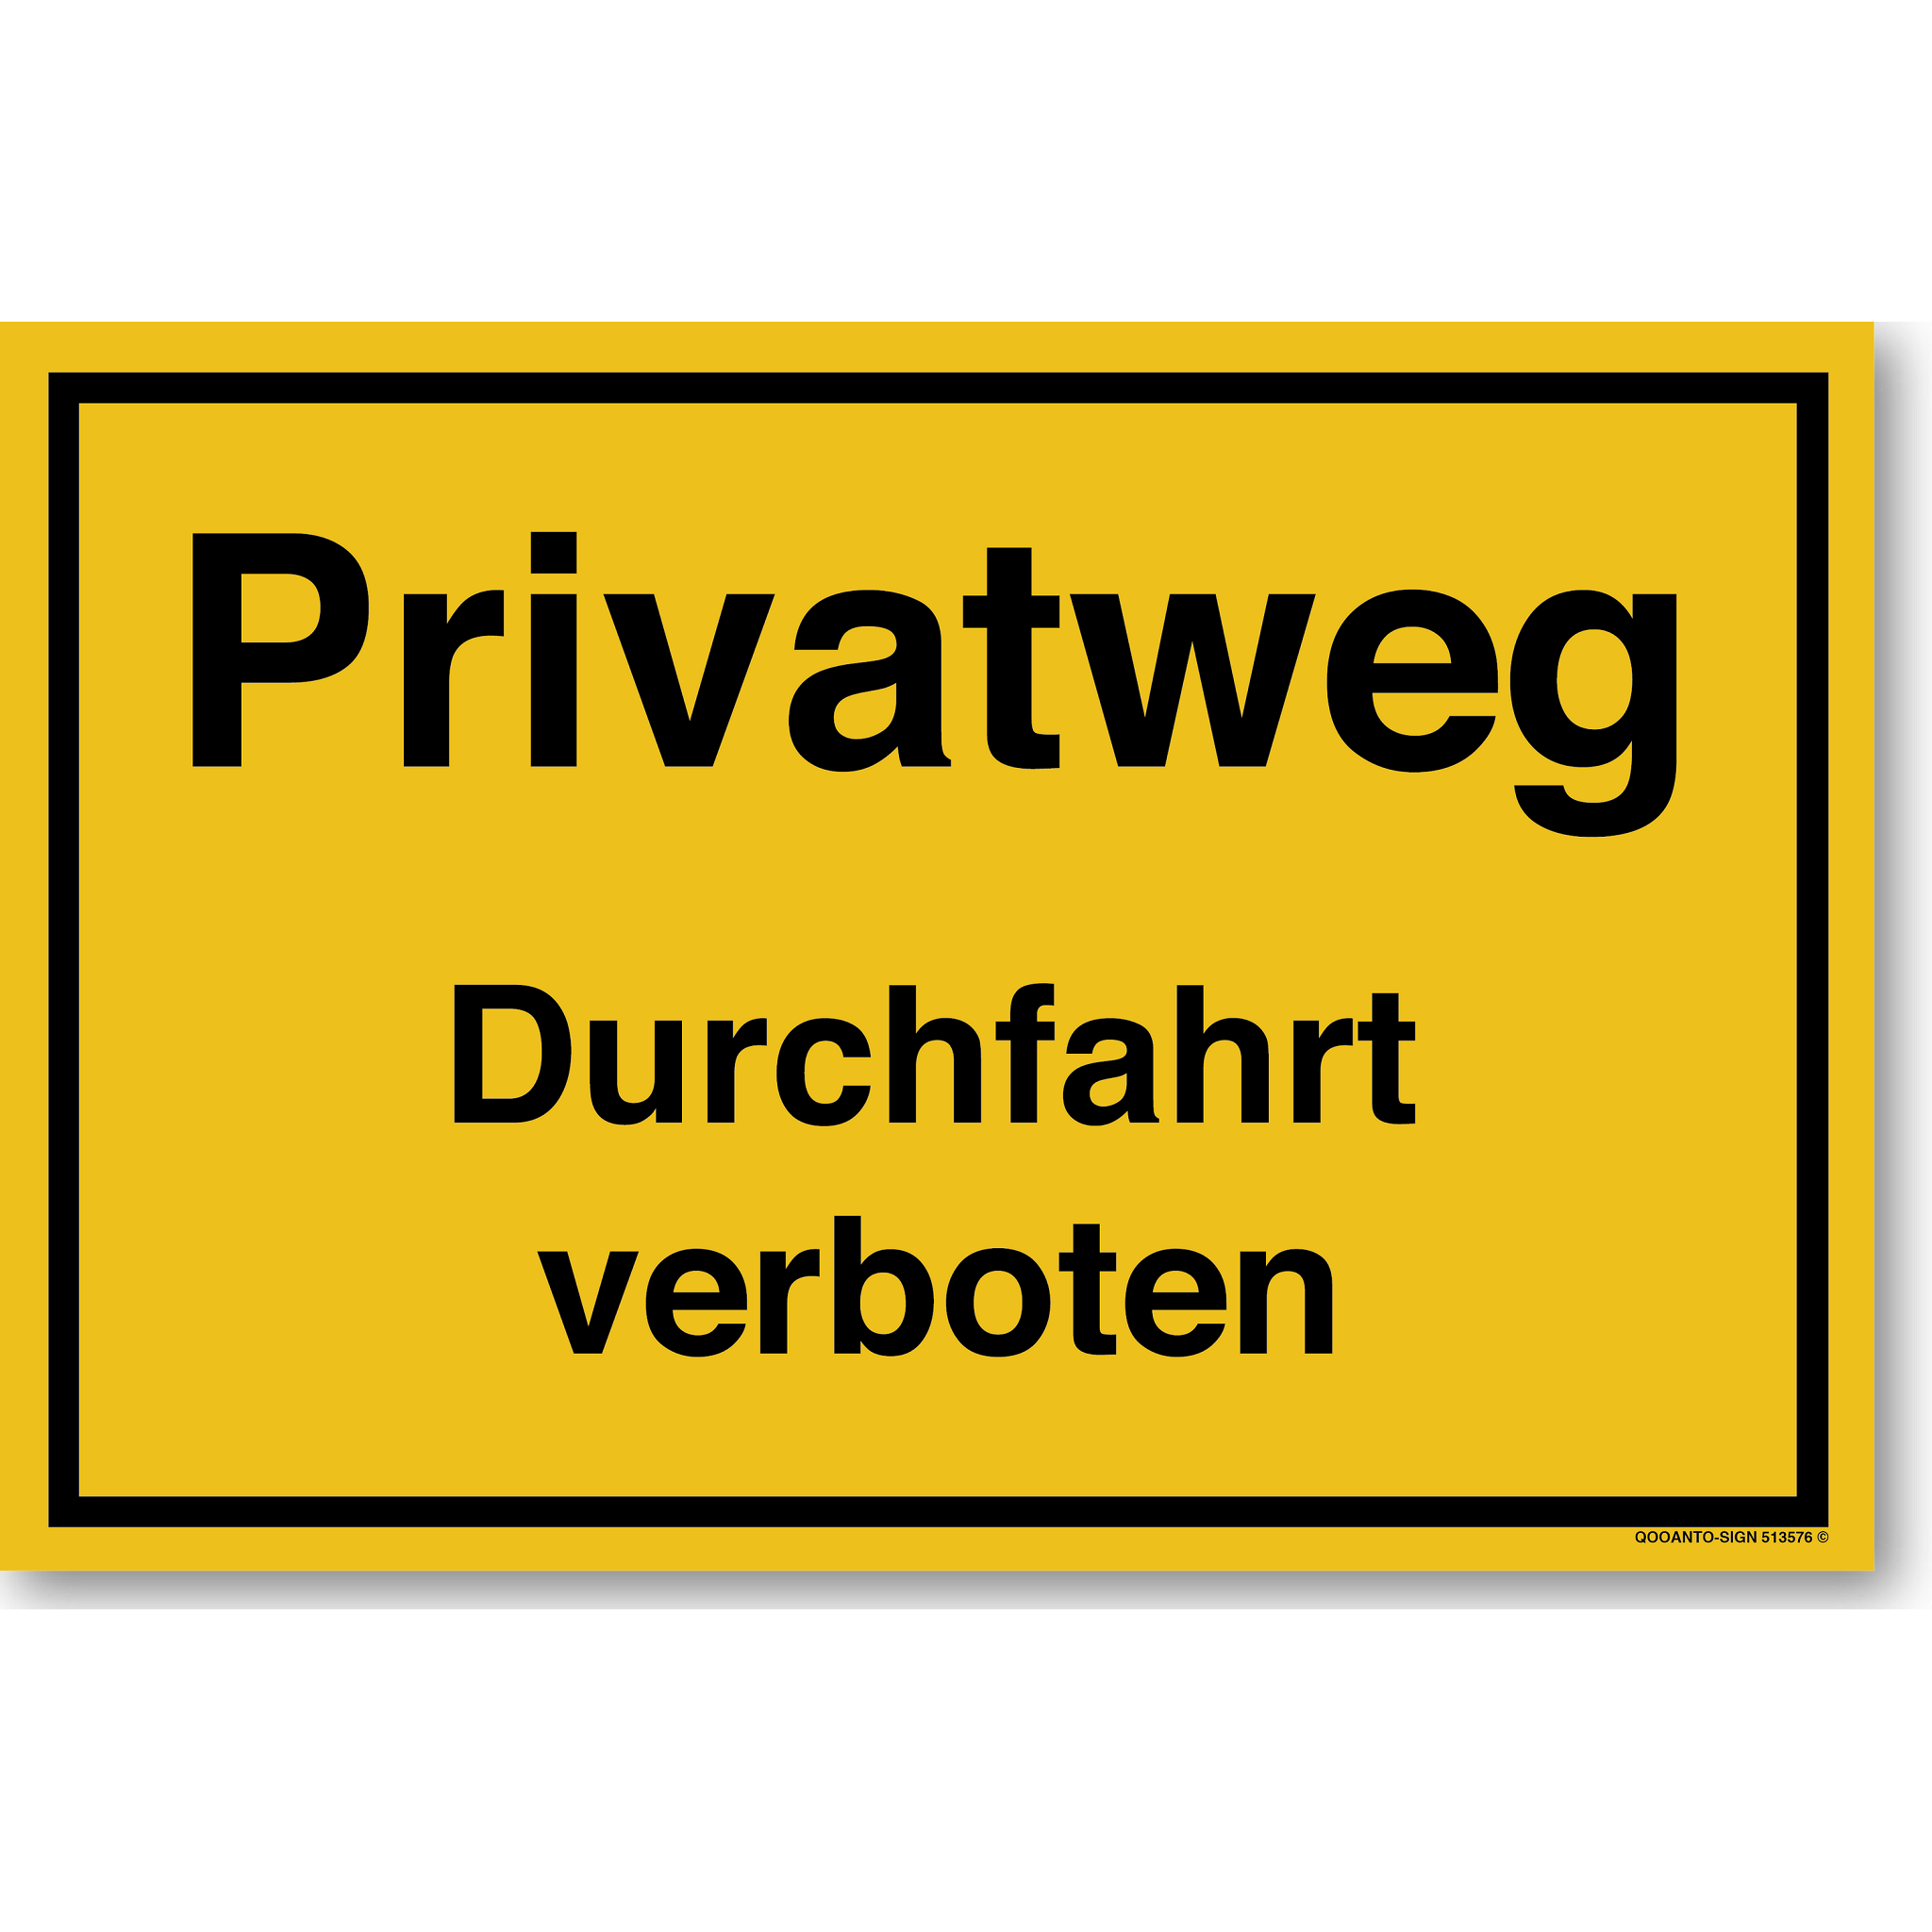 Privatweg Durchfahrt verboten, gelb, Schild oder Aufkleber